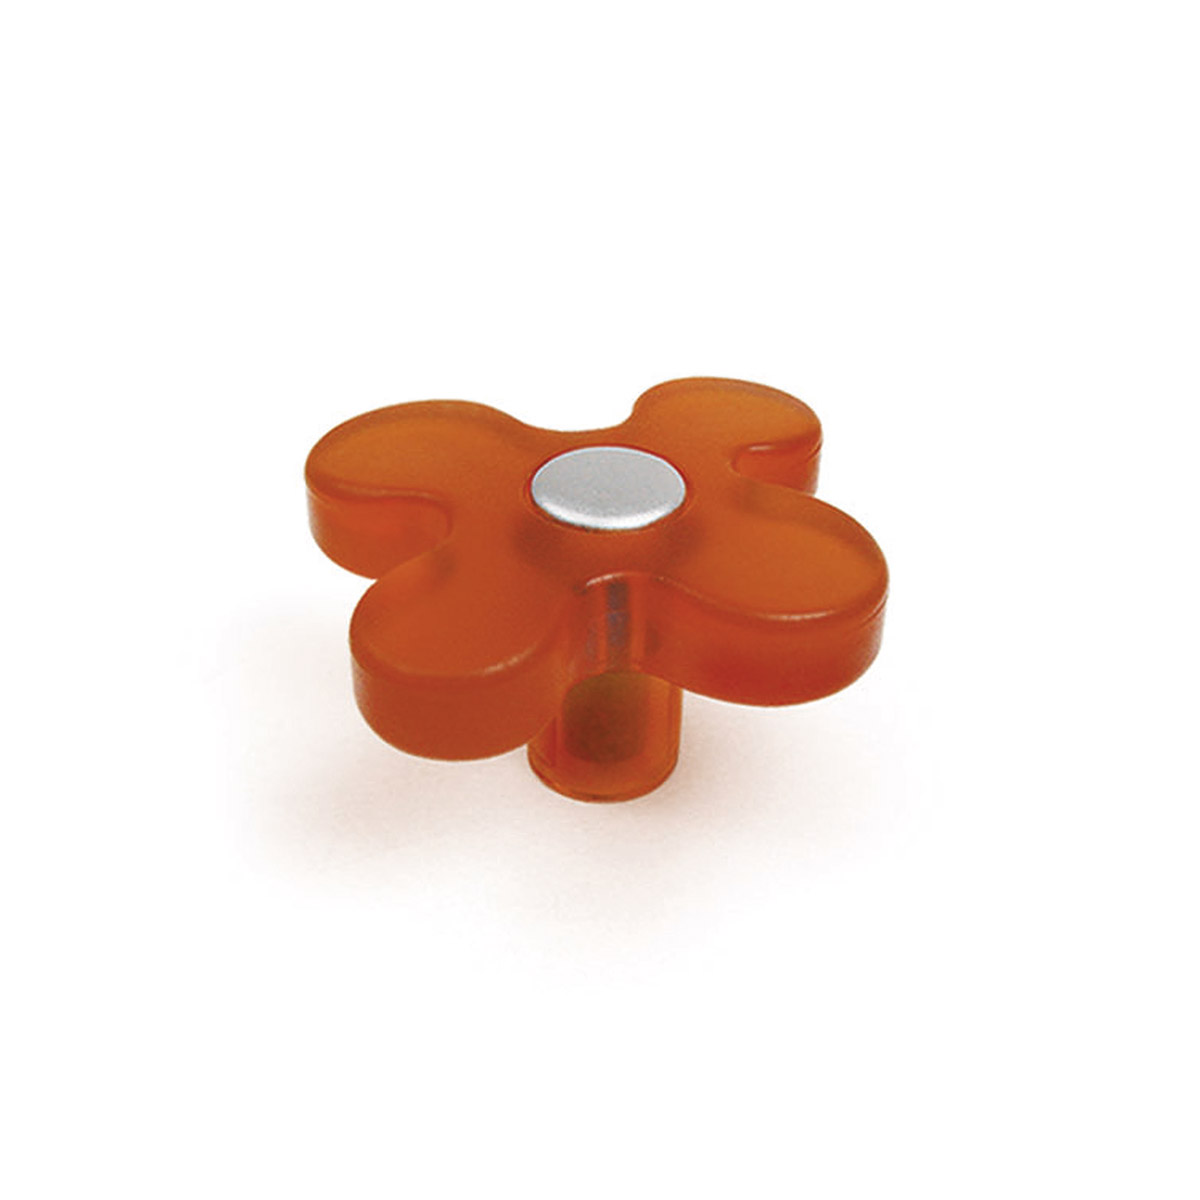 Bouton en plastique avec finition orange, dimensions: 49x49x26mm Ø: 49mm